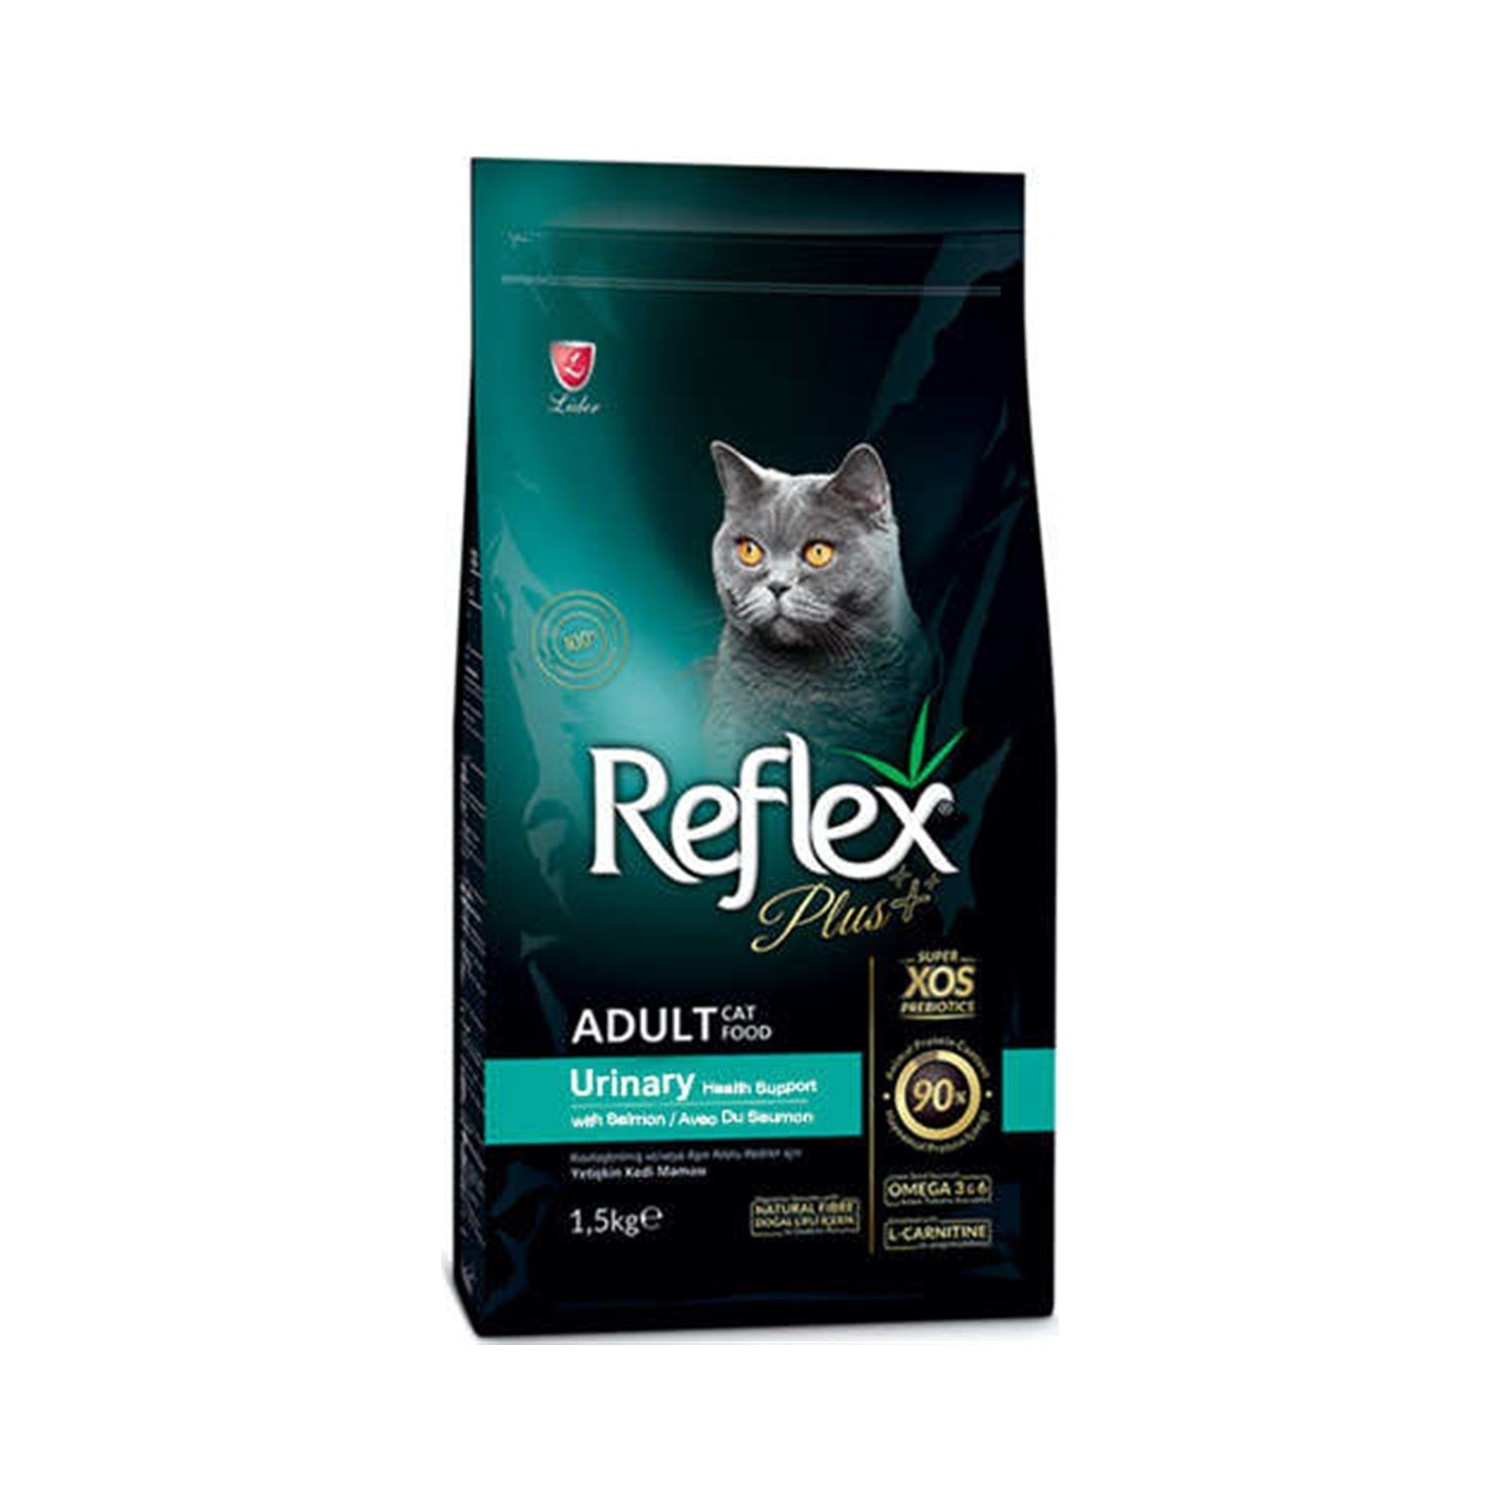 Reflex Plus Urinary Tavuklu Kedi Maması 1.5 Kg Fiyatı